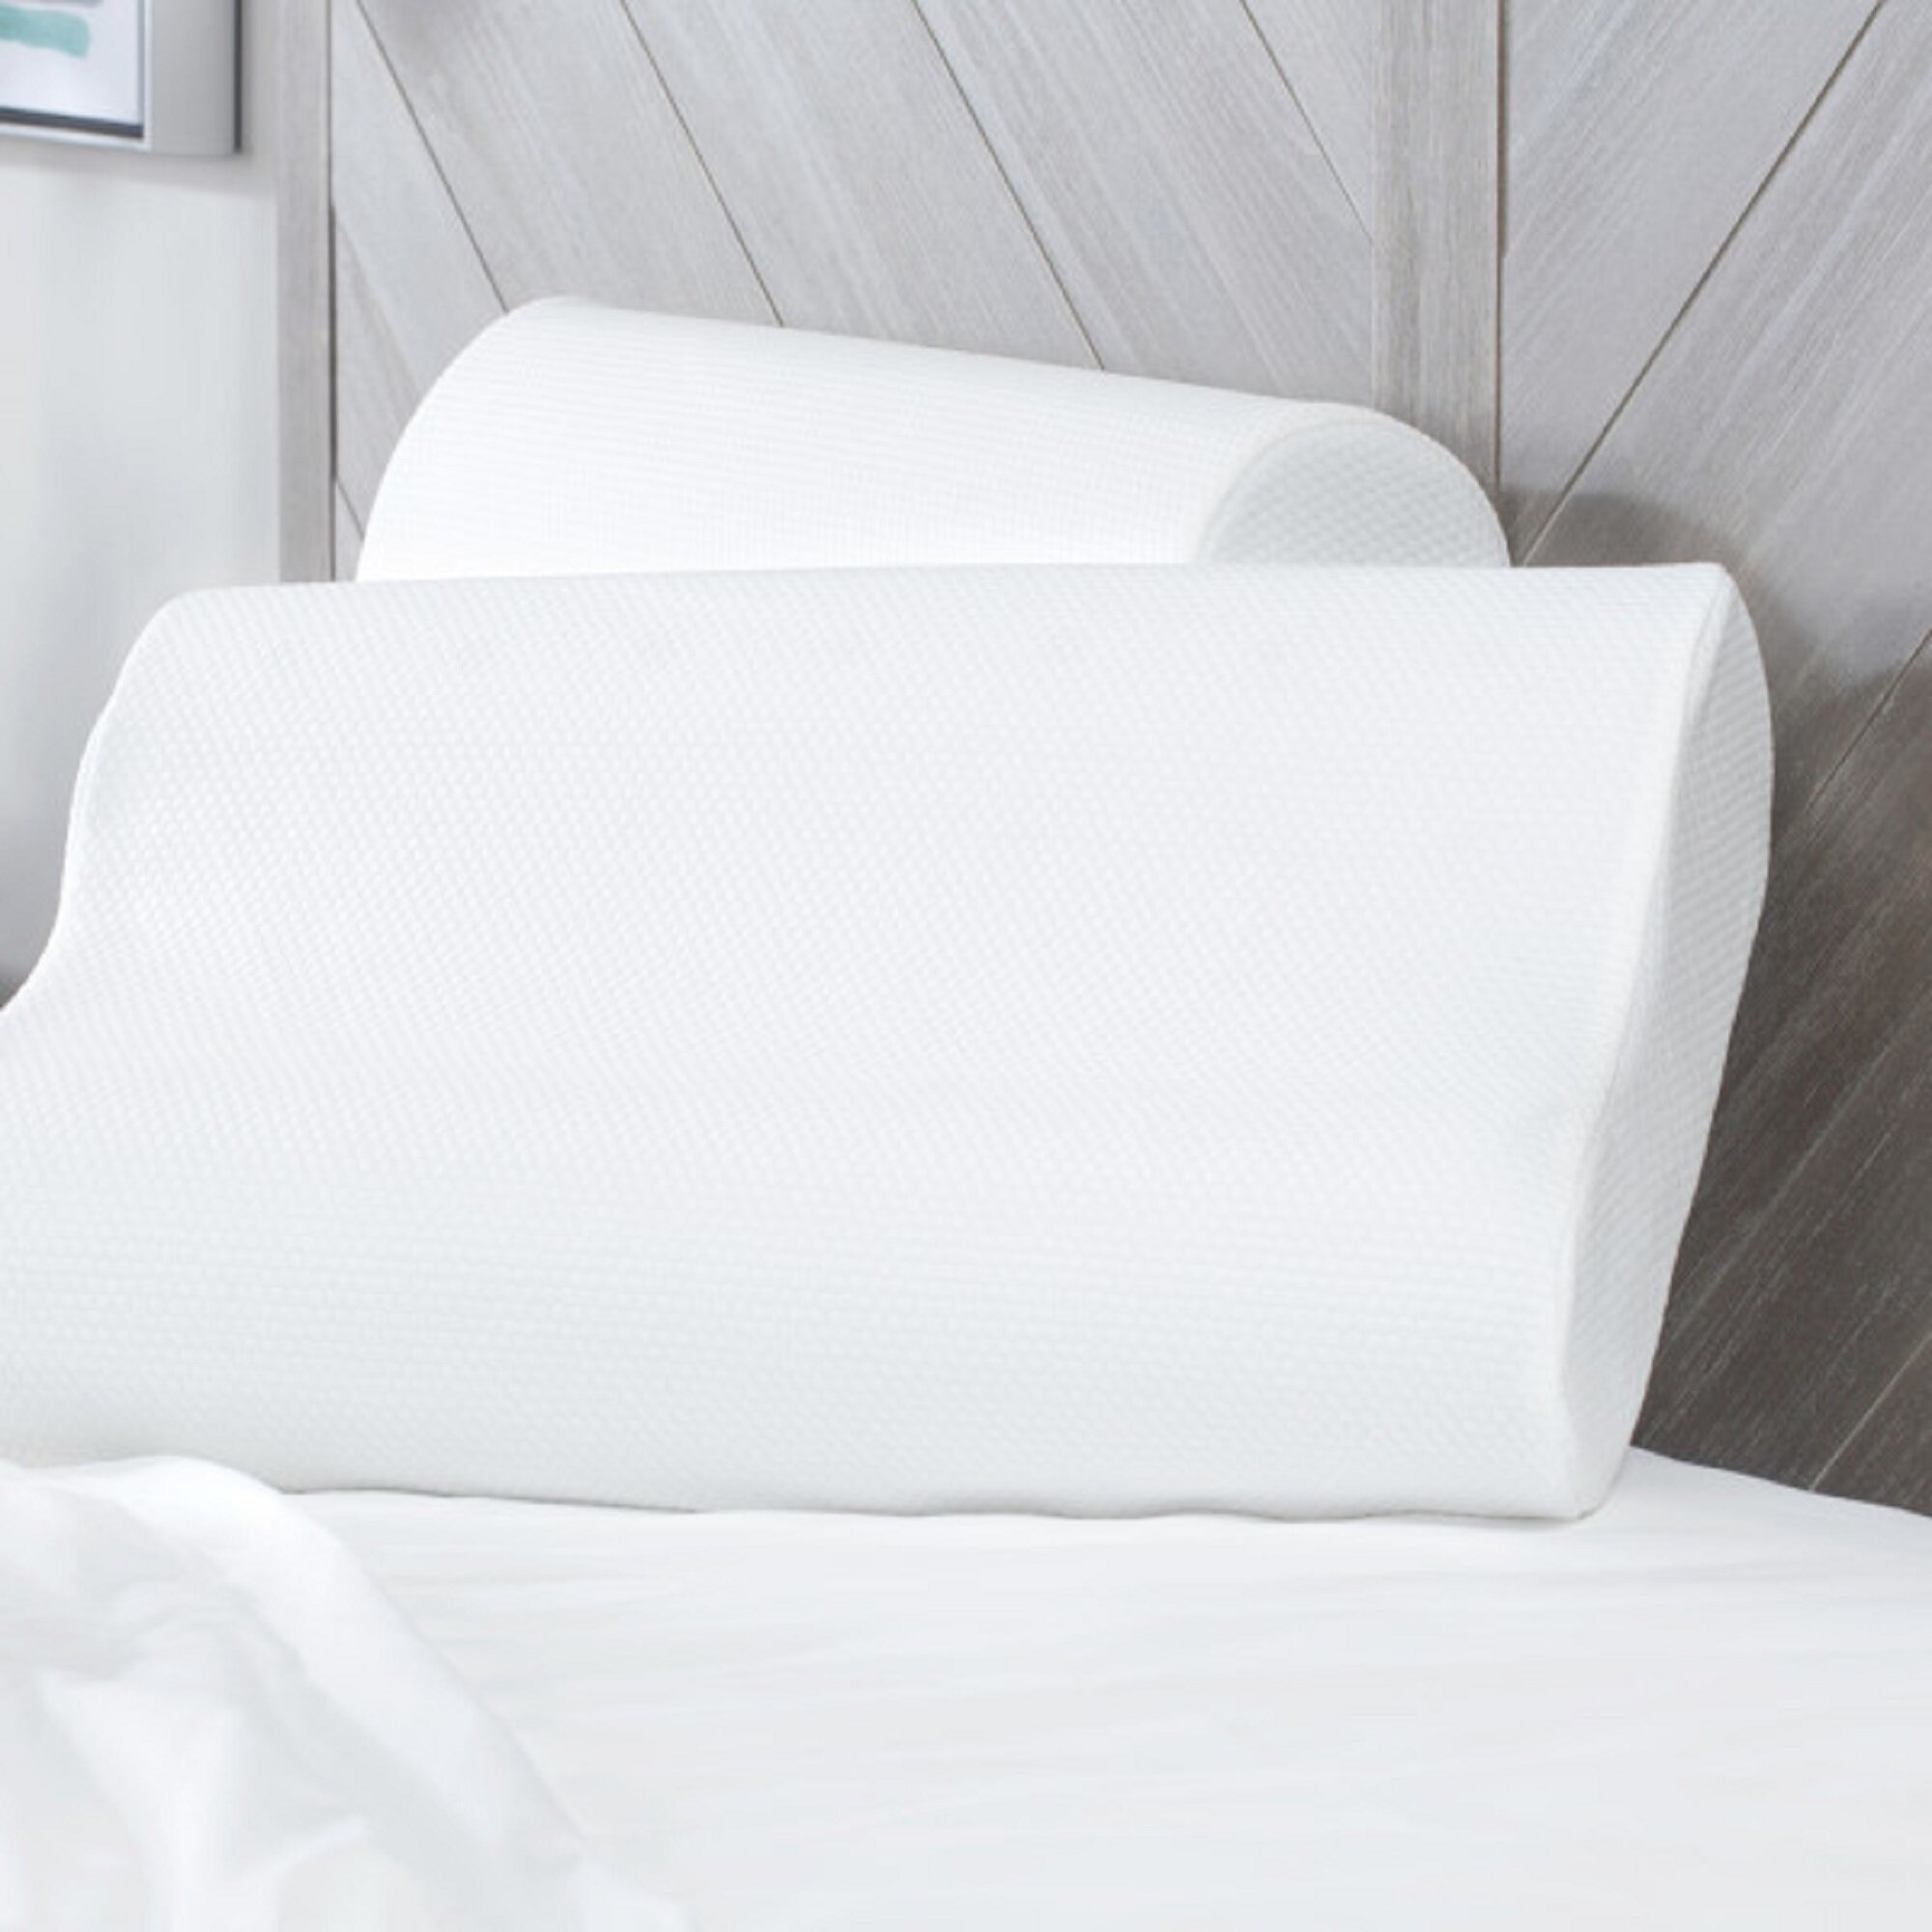 Sleep Innovations Contour Memory Foam Pillow Standard Size 